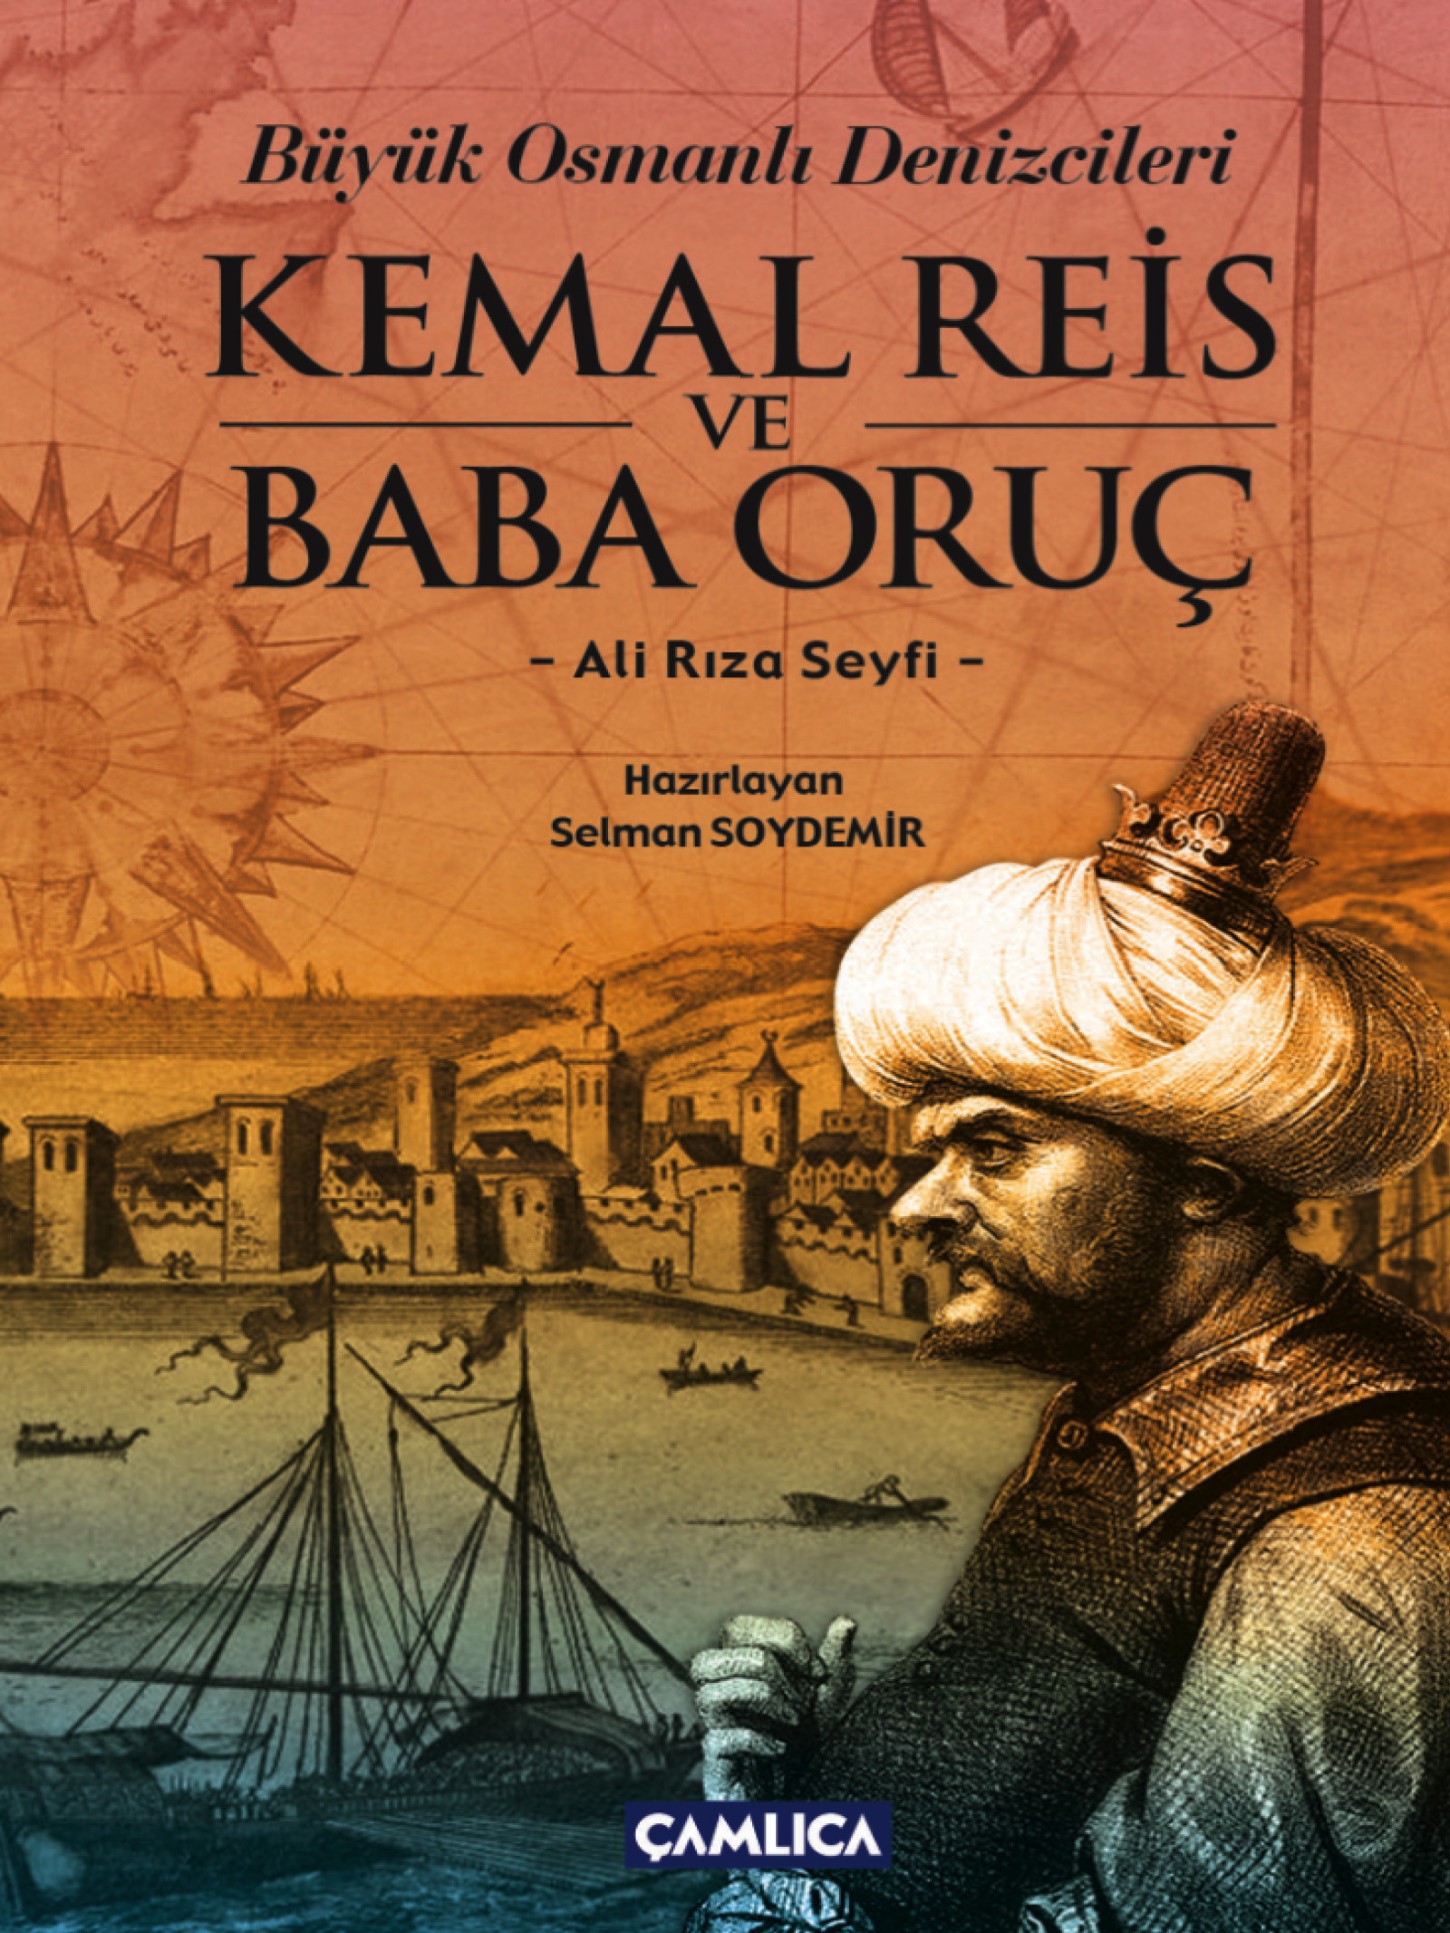 Büyük Osmanlı Denizcileri Kemal Reis ve Baba Oruç Kitap Kapağı